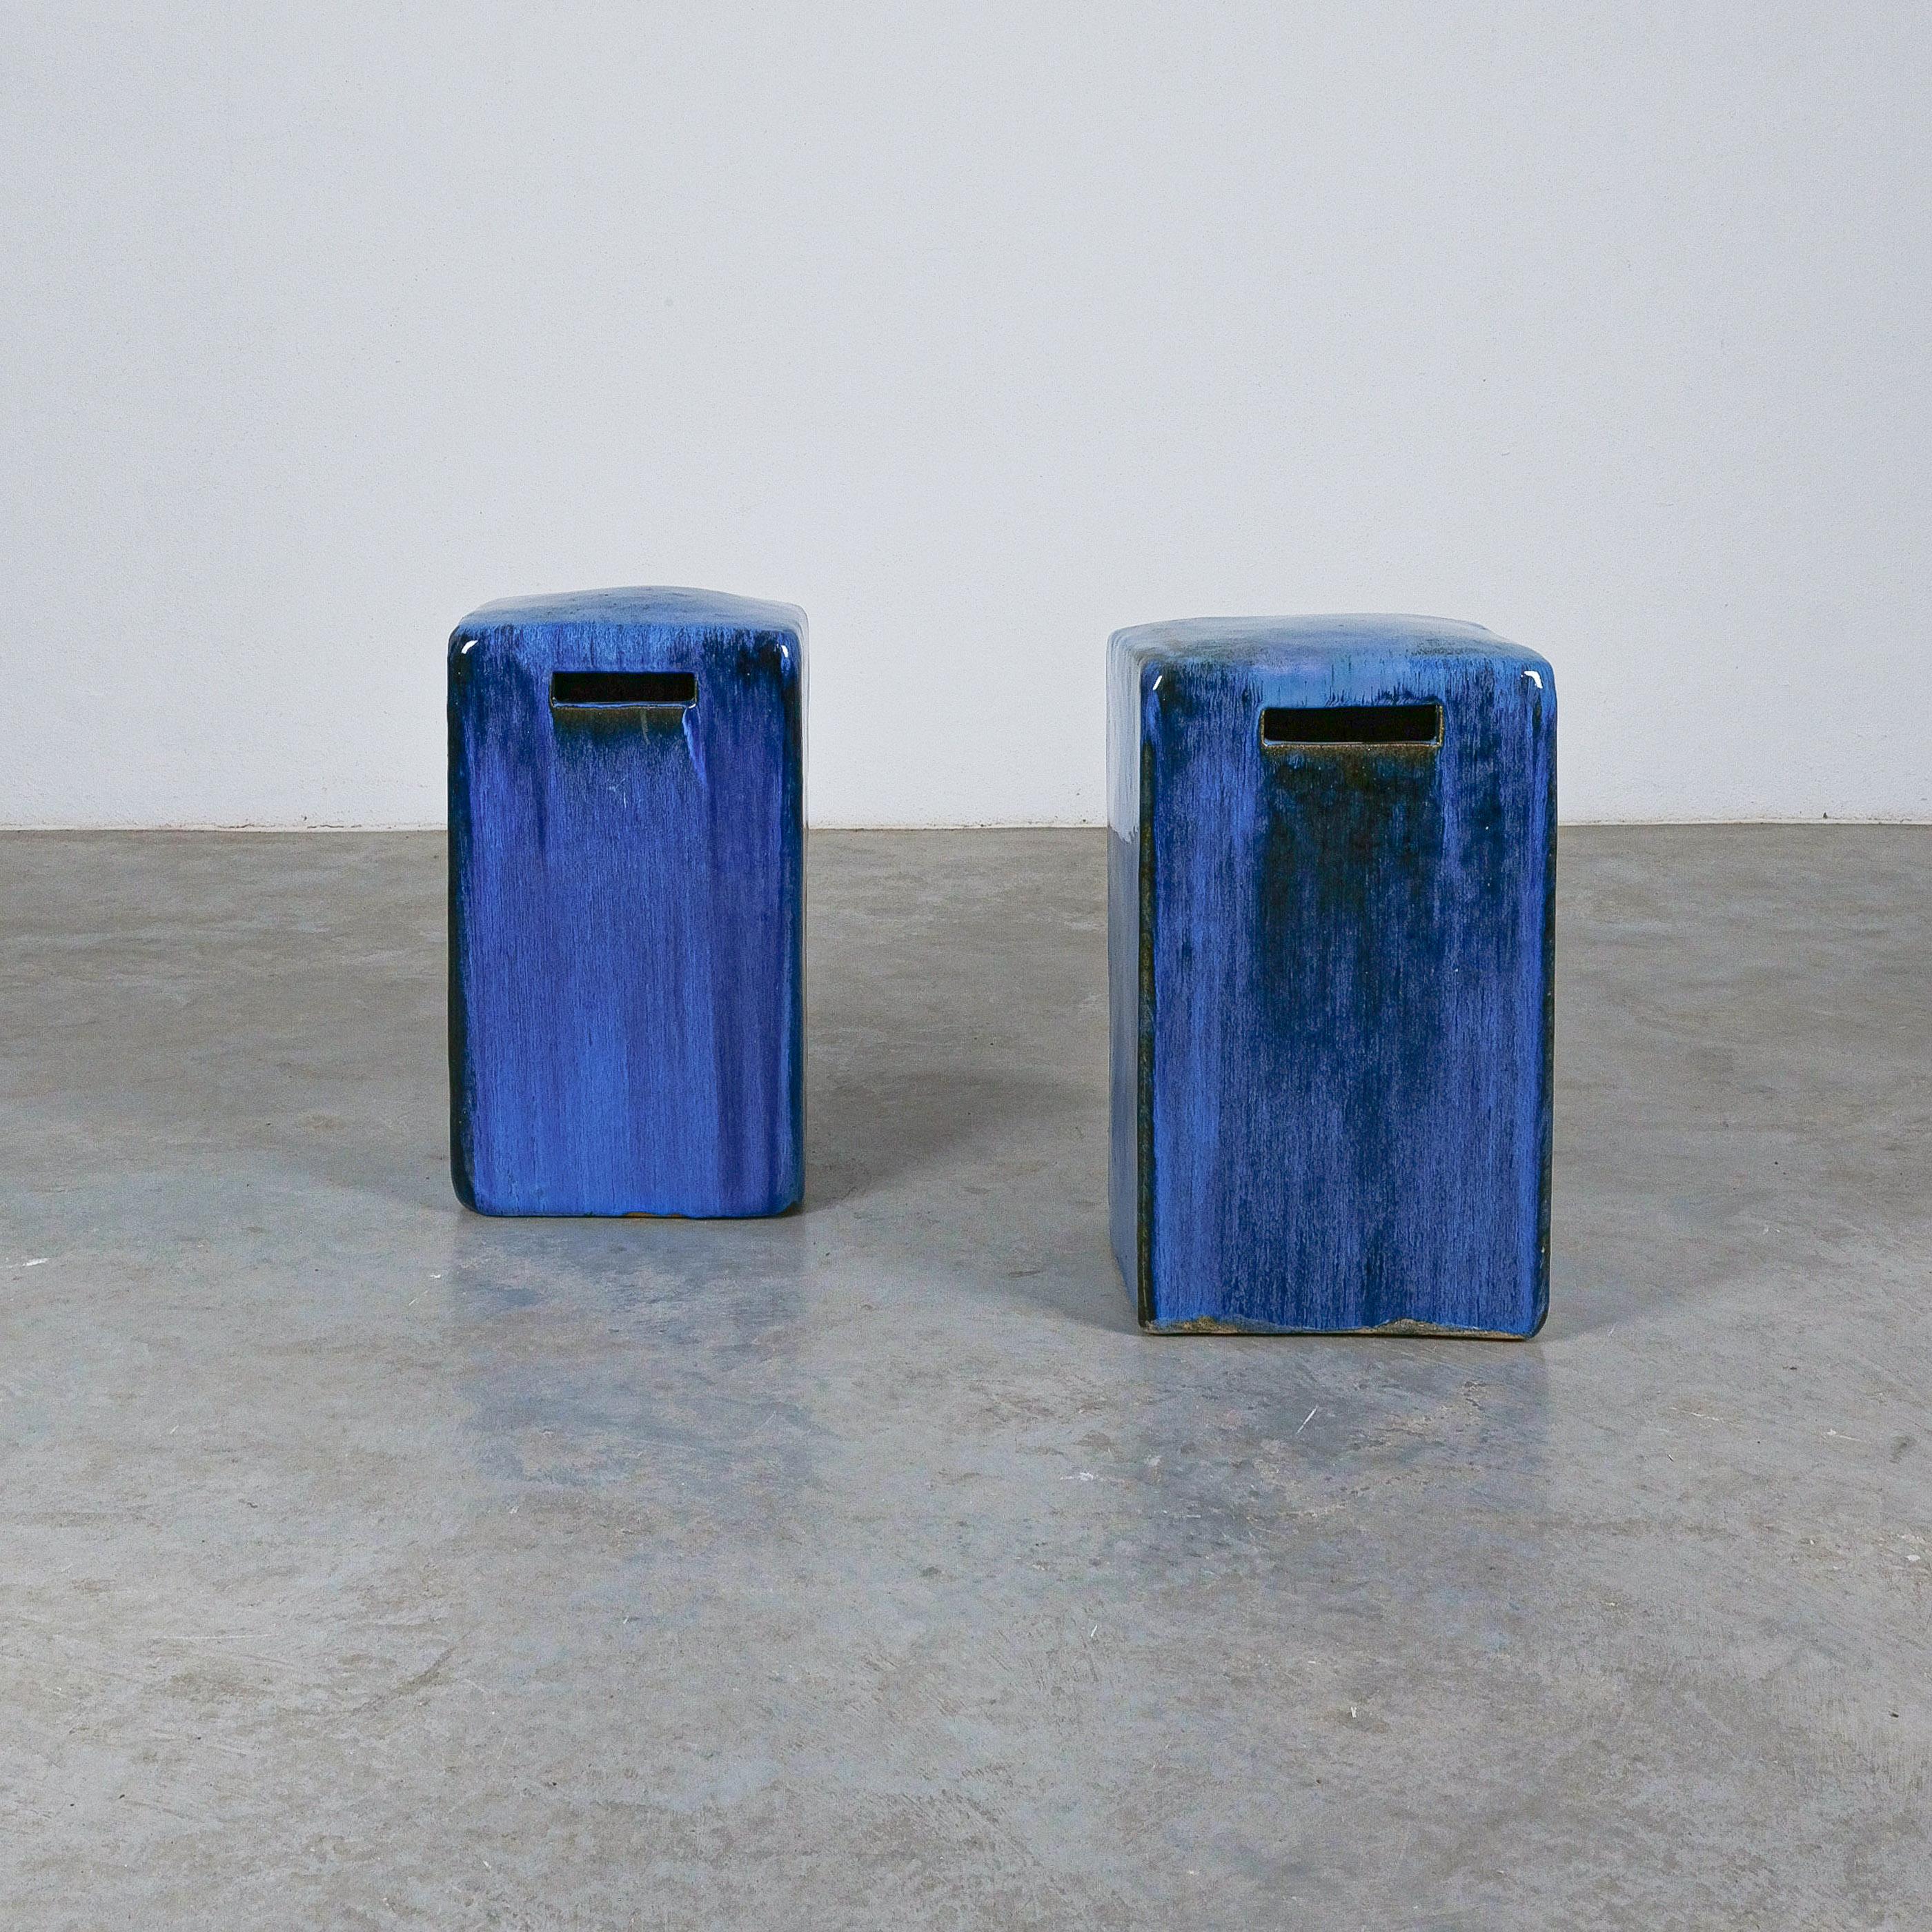 Keramische Gartenhocker Blau glasiert, Italien, um 1980-als Paar verkauft.

Einzigartiges und auffälliges Paar Keramikhocker für Zuhause oder den Außenbereich. Diese Stühle sind aus massiver glasierter Keramik gefertigt, sehr stabil und schwer.